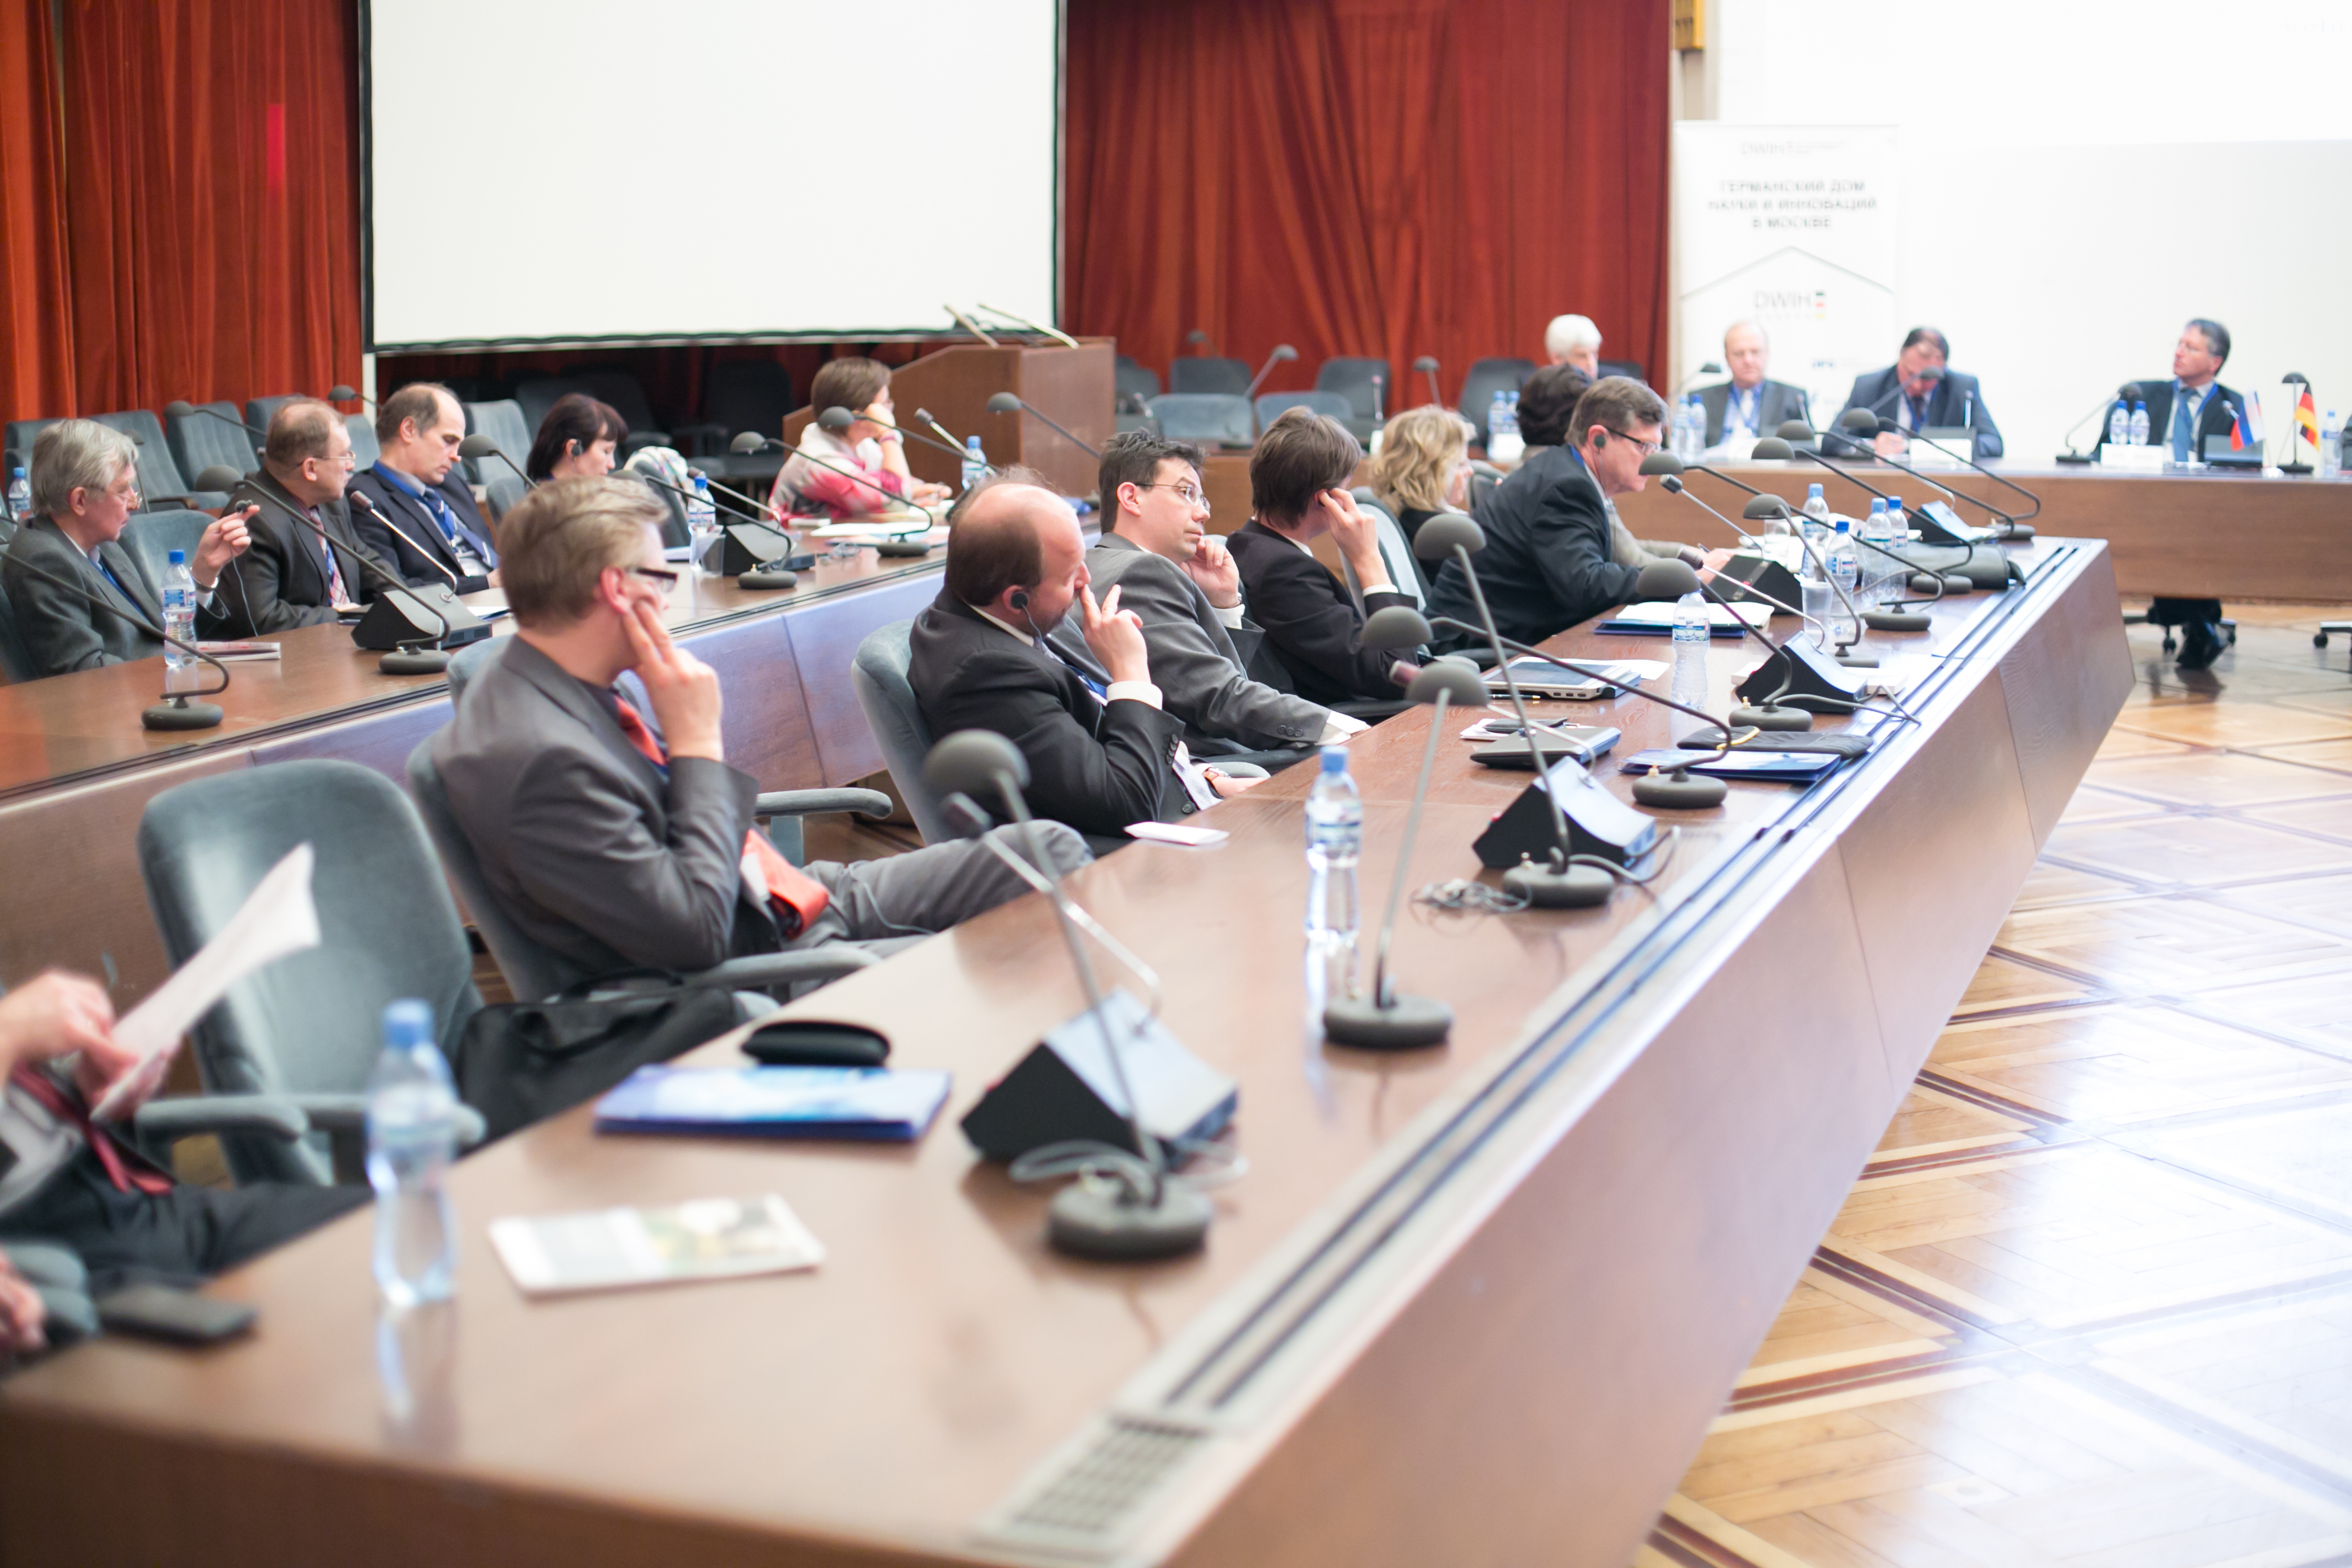 Презентации Центров совместных исследований и исследовательских кластеров в Москве, февраль 2013